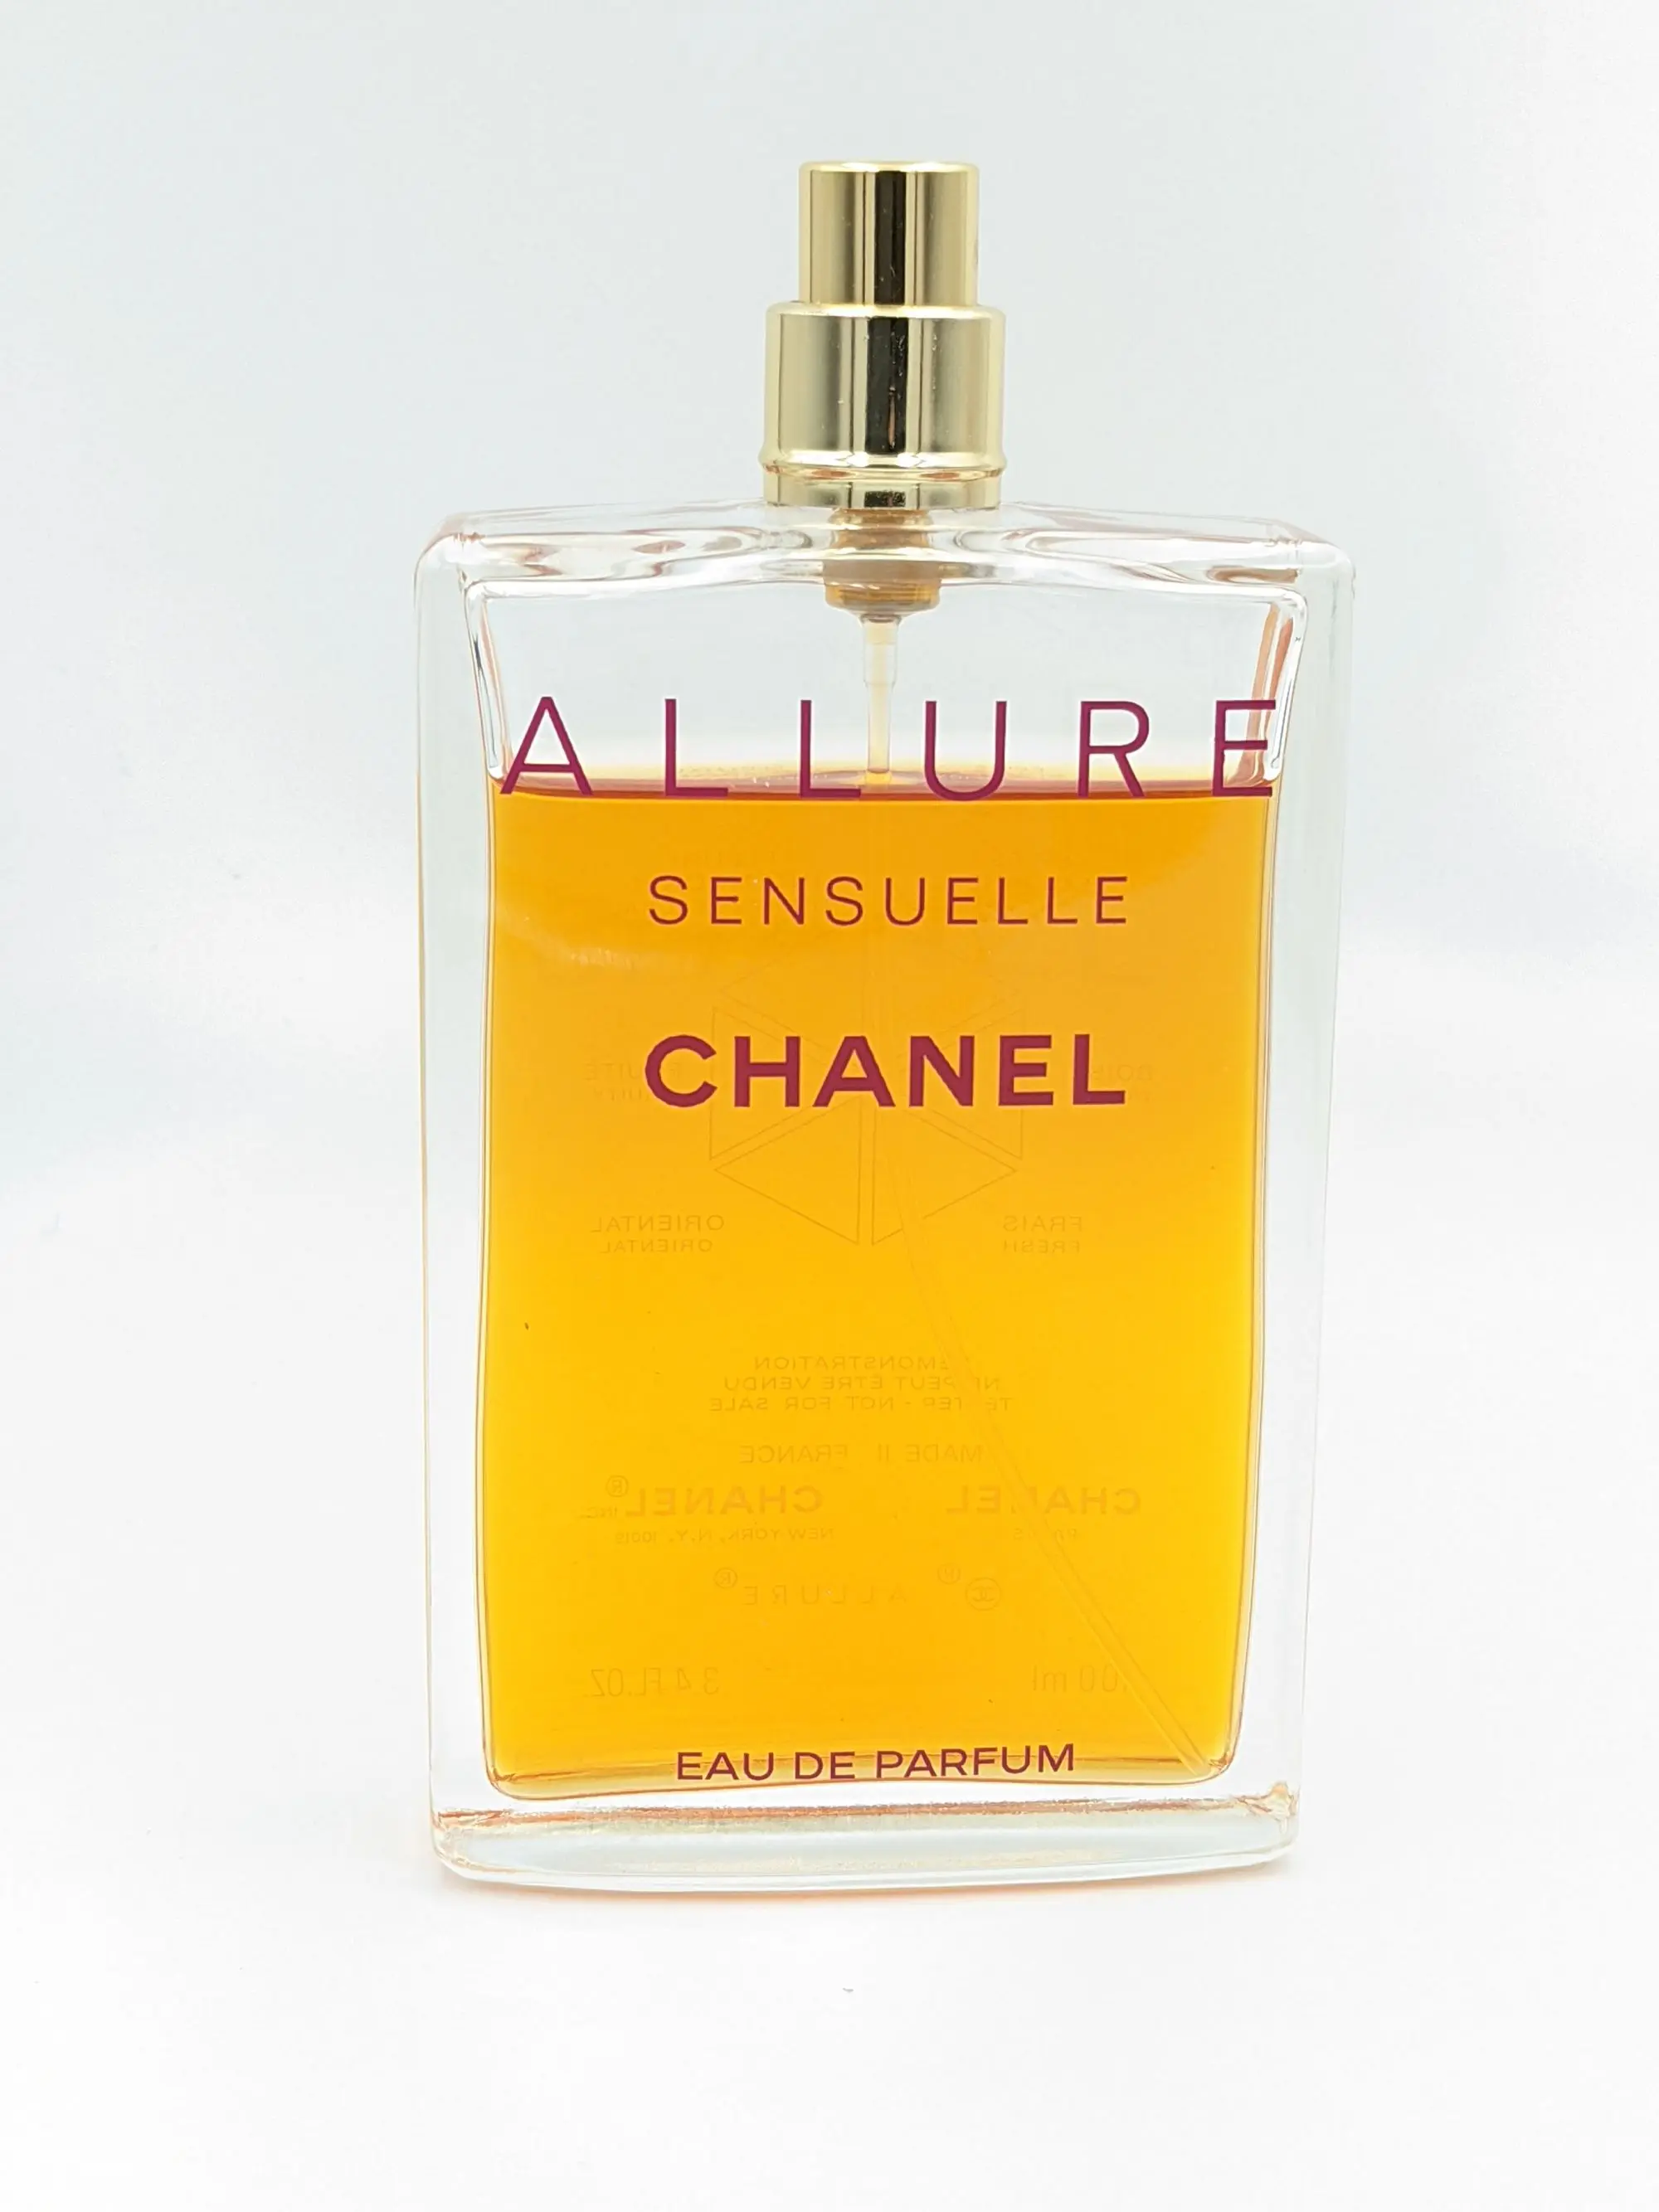 Allure Sensuelle Eau de Parfum 100 ml - used - no box